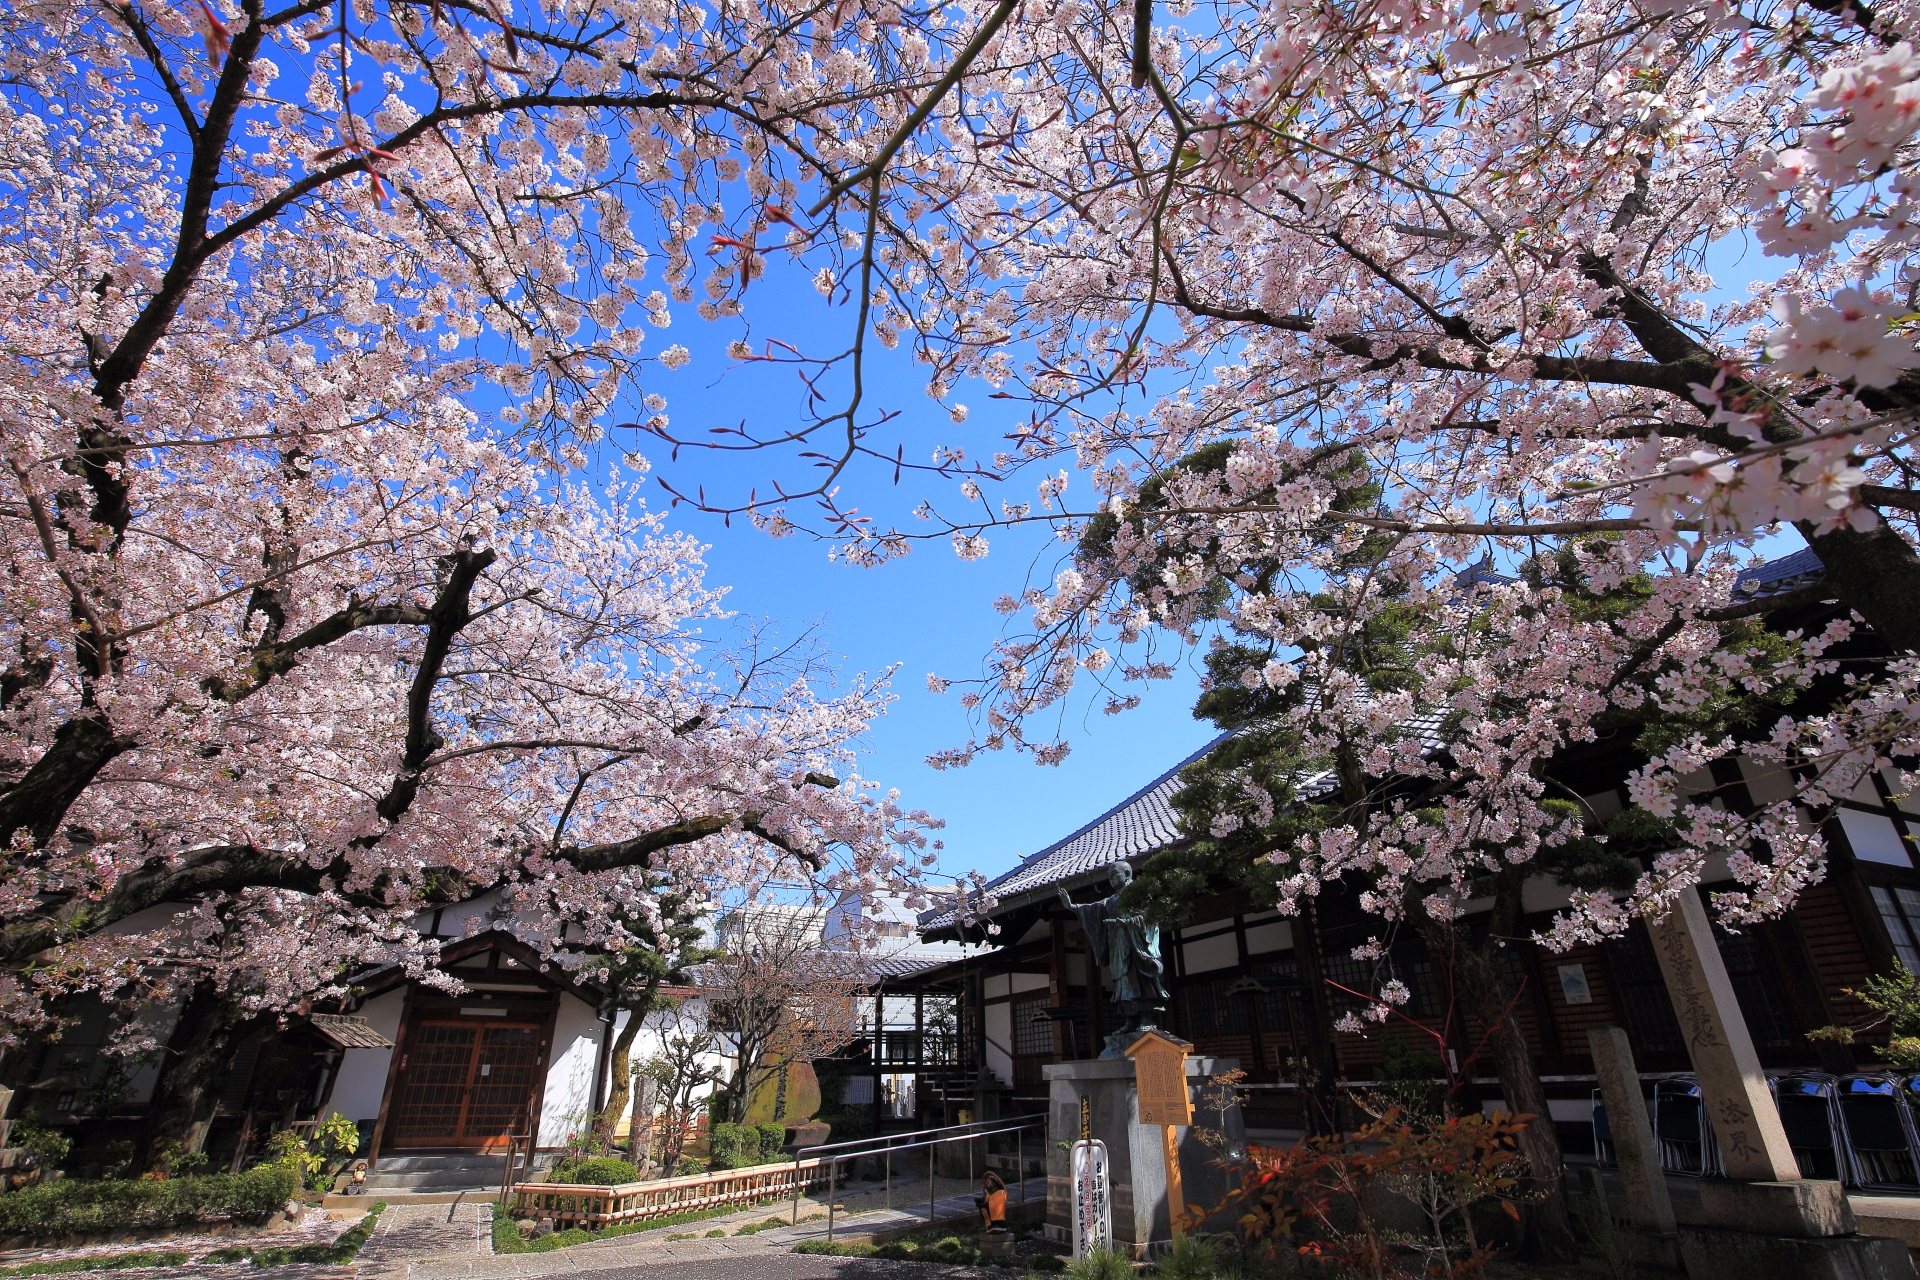 墨染寺の溢れんばかりの桜